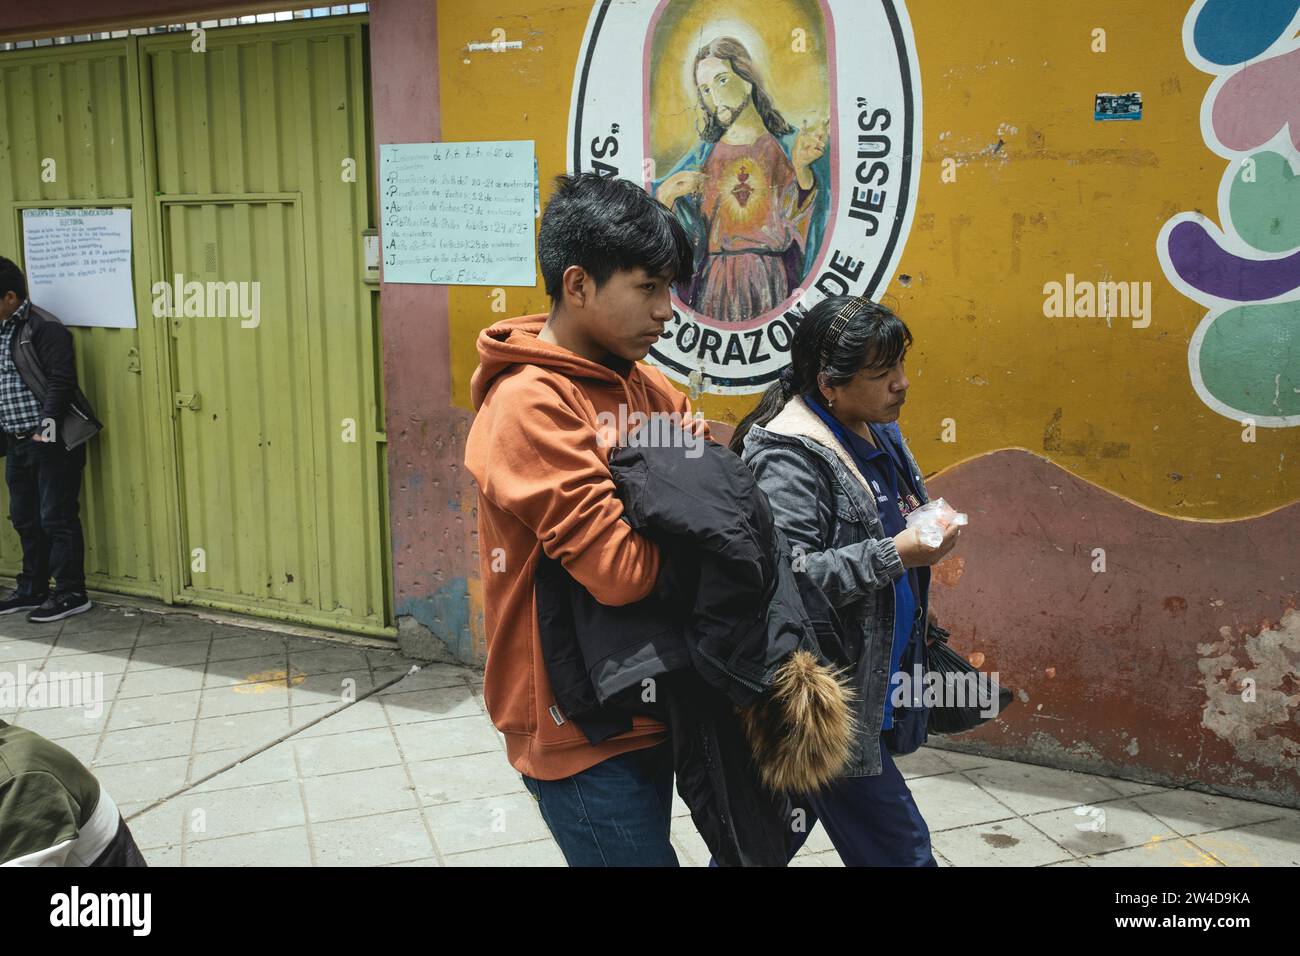 Les passants devant l'entrée de l'école Sagrado Corazon de Jesus, Avenida Ferrocarril, Huancayo, Pérou Banque D'Images